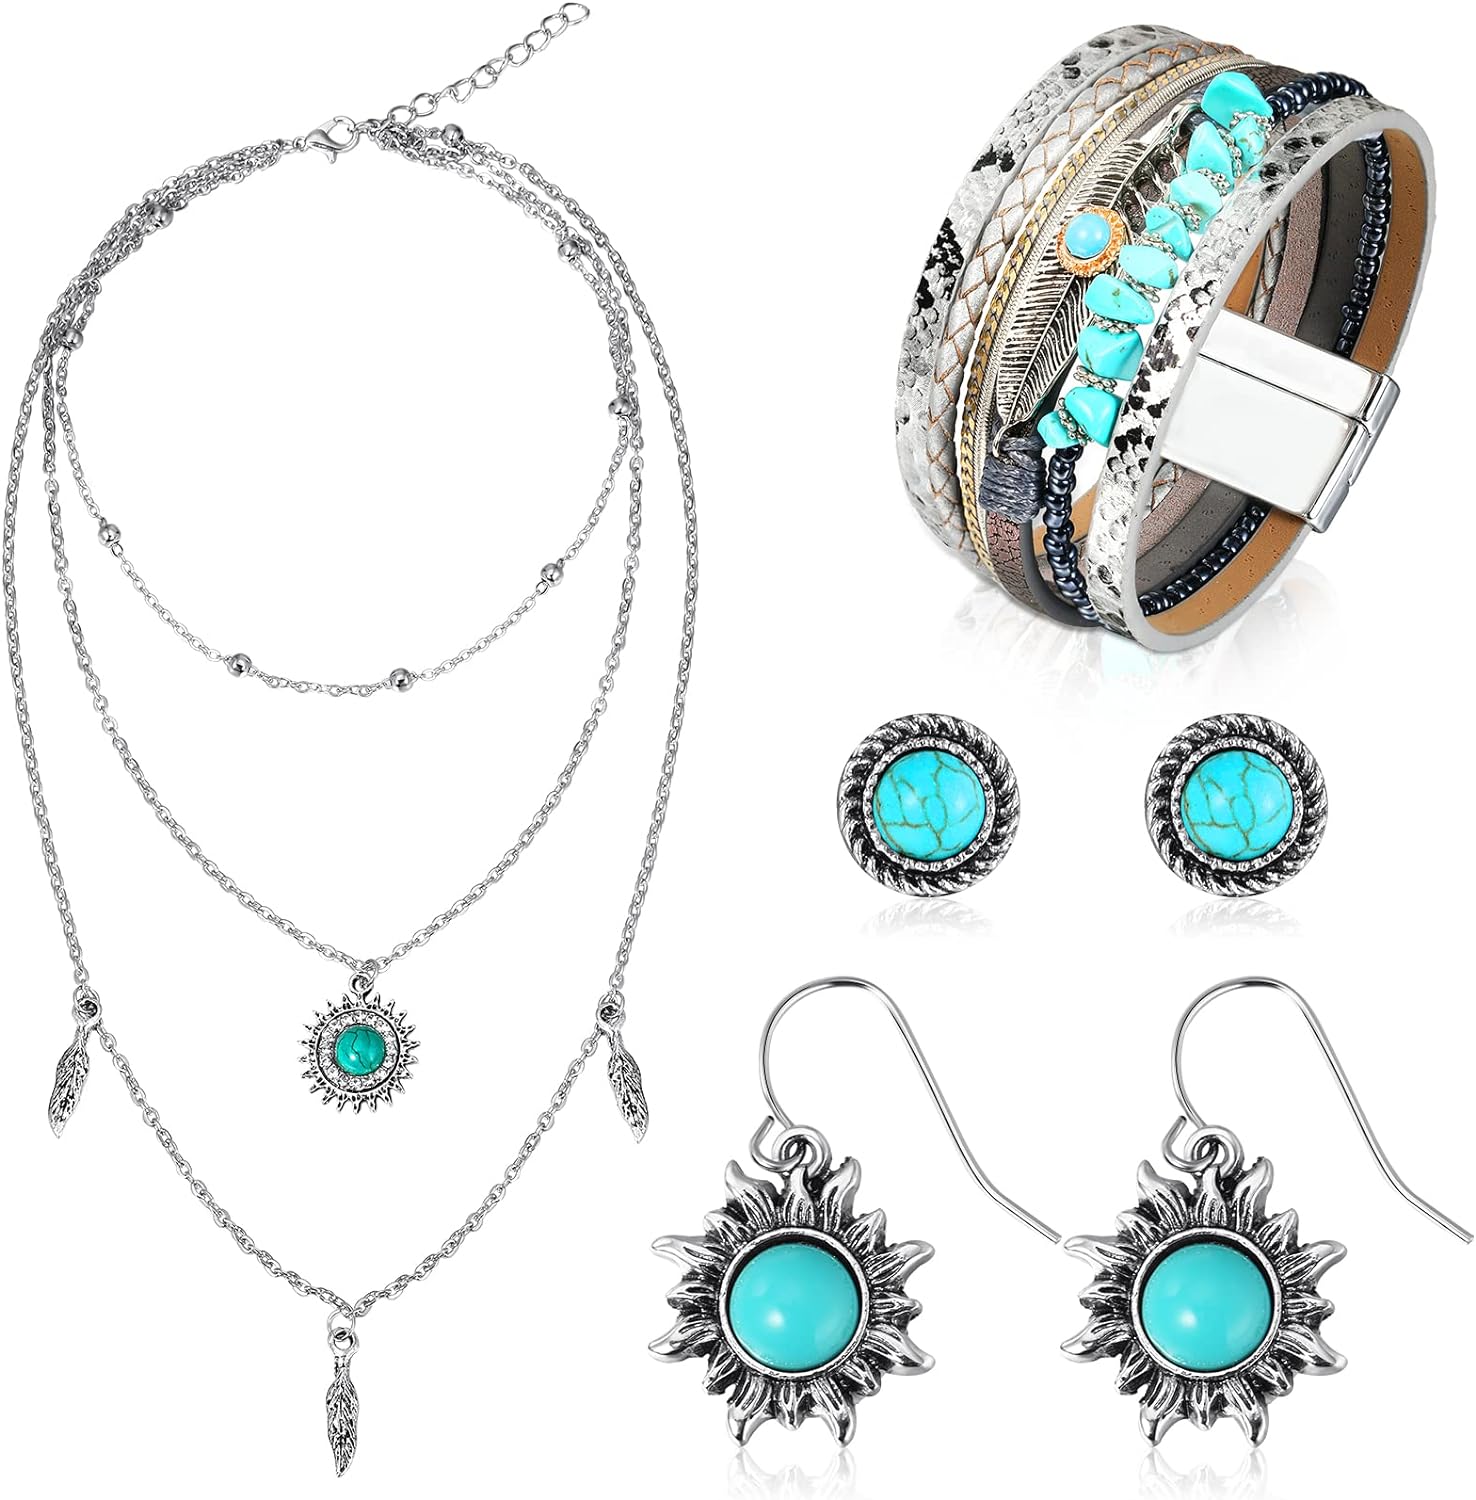 6 Pcs Western Jewelry for Women Boho Turquoise Necklace Bracelet Earring Jewelry Set Bohemian Dangle Earrings Multi Strand Feather Wrap Bracelet for Women